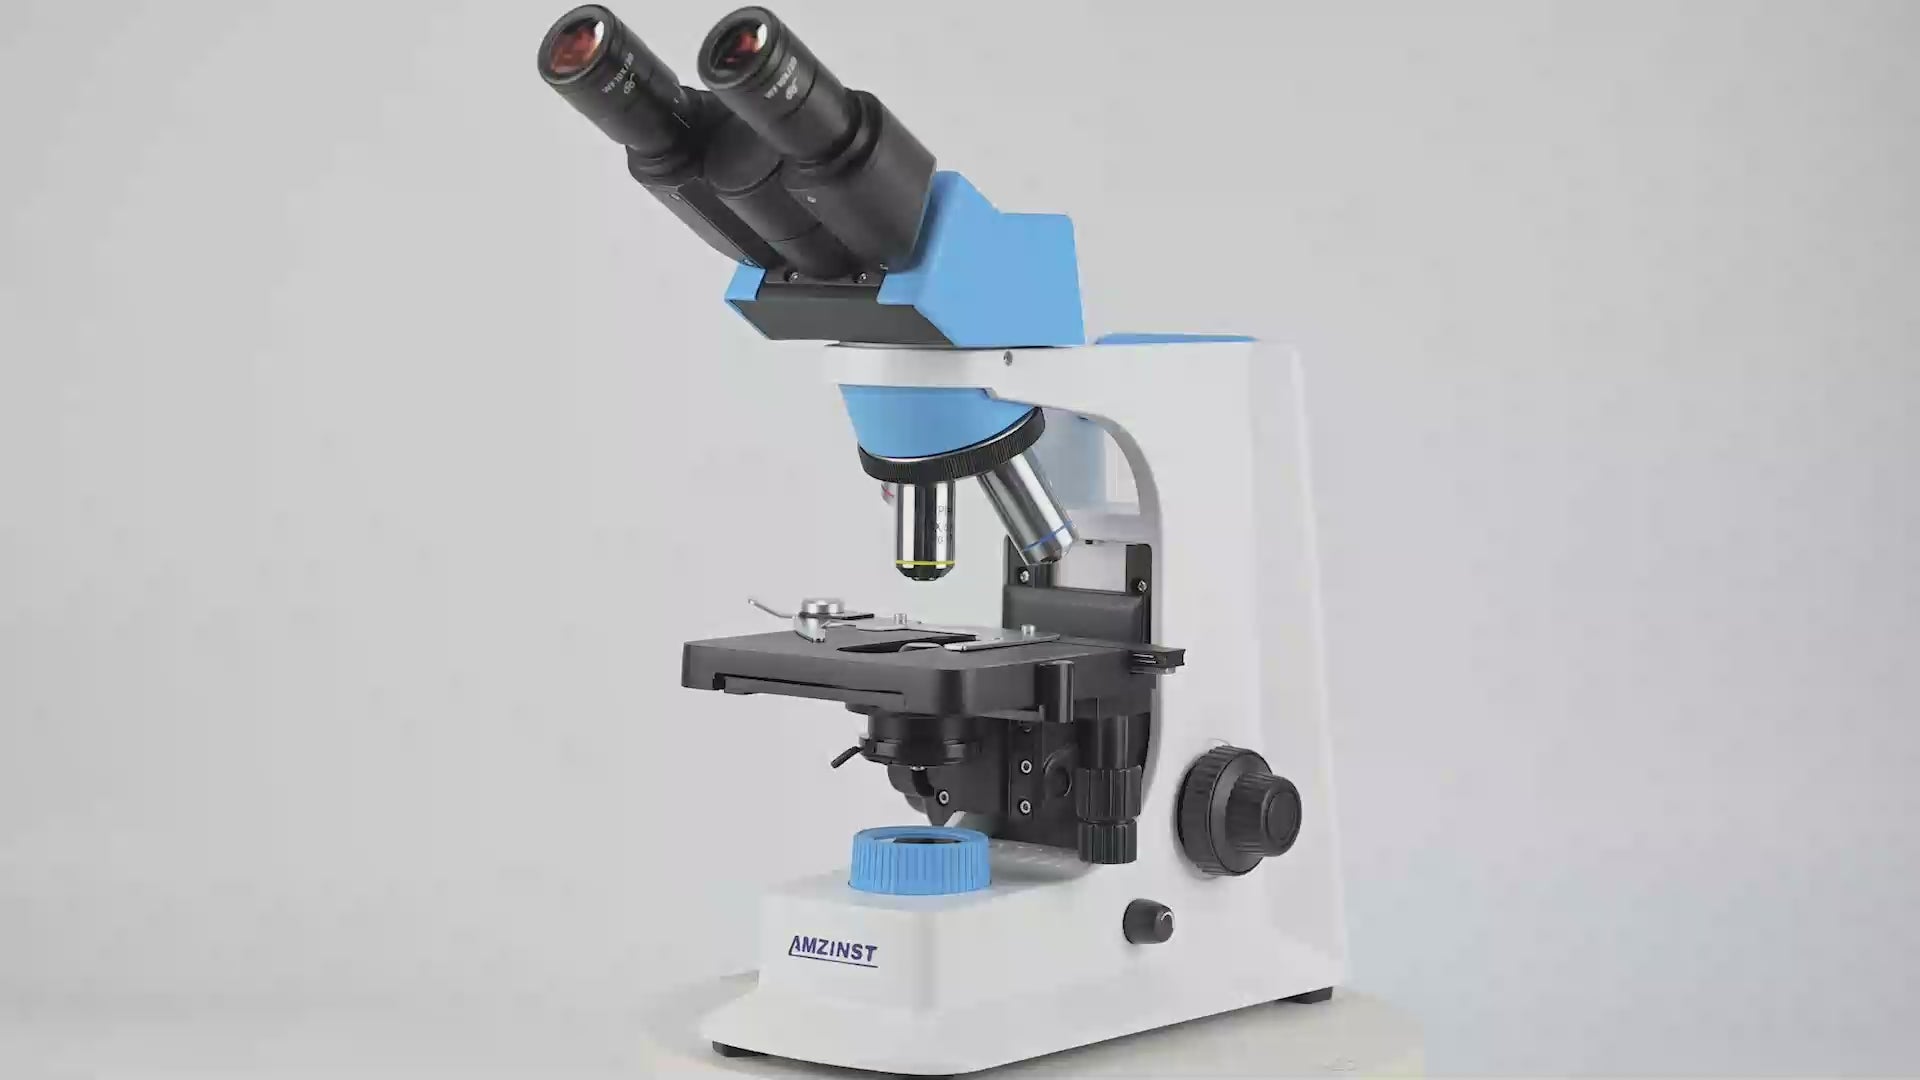 NK-230E/NK-230 Microscopio binocular vertical infinito